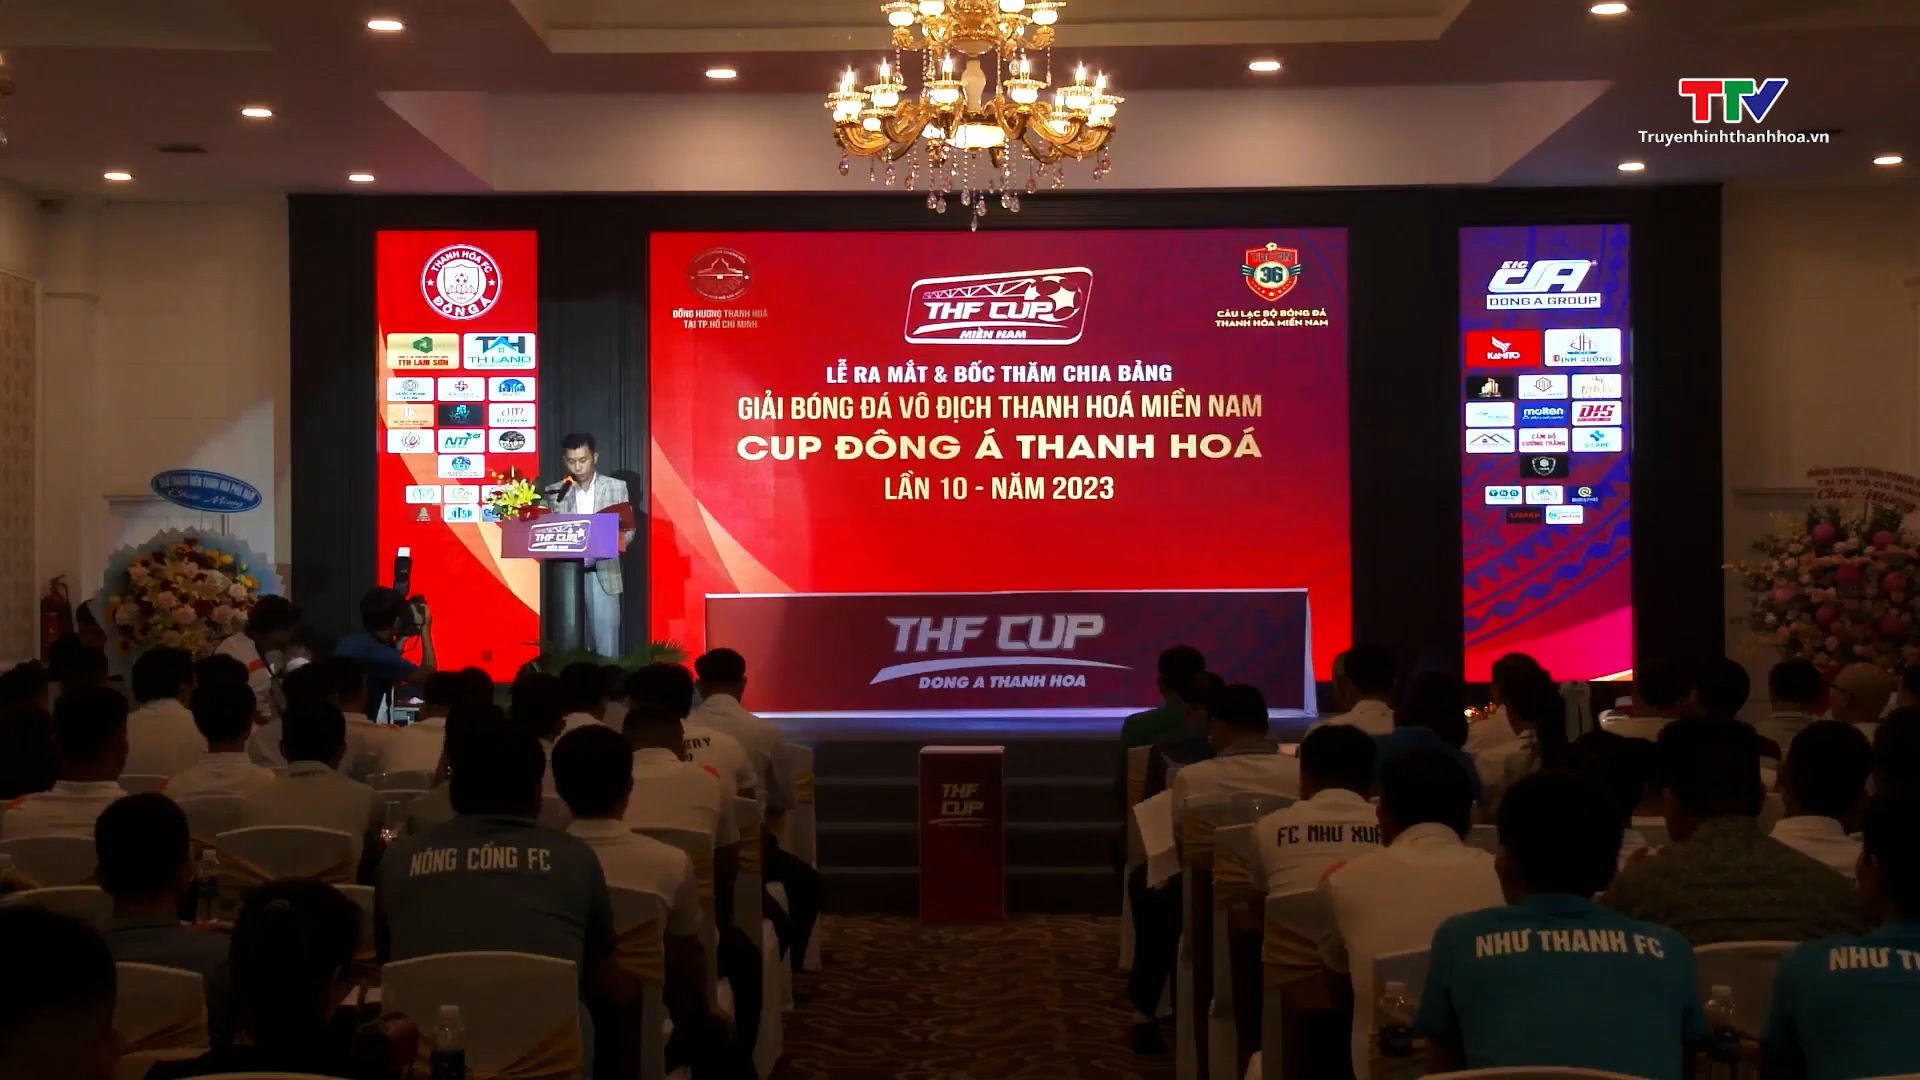 Họp báo và bốc thăm Giải bóng đá vô địch Thanh Hóa miền Nam (THF) - Cúp Đông Á Thanh Hóa năm 2023  - Ảnh 2.